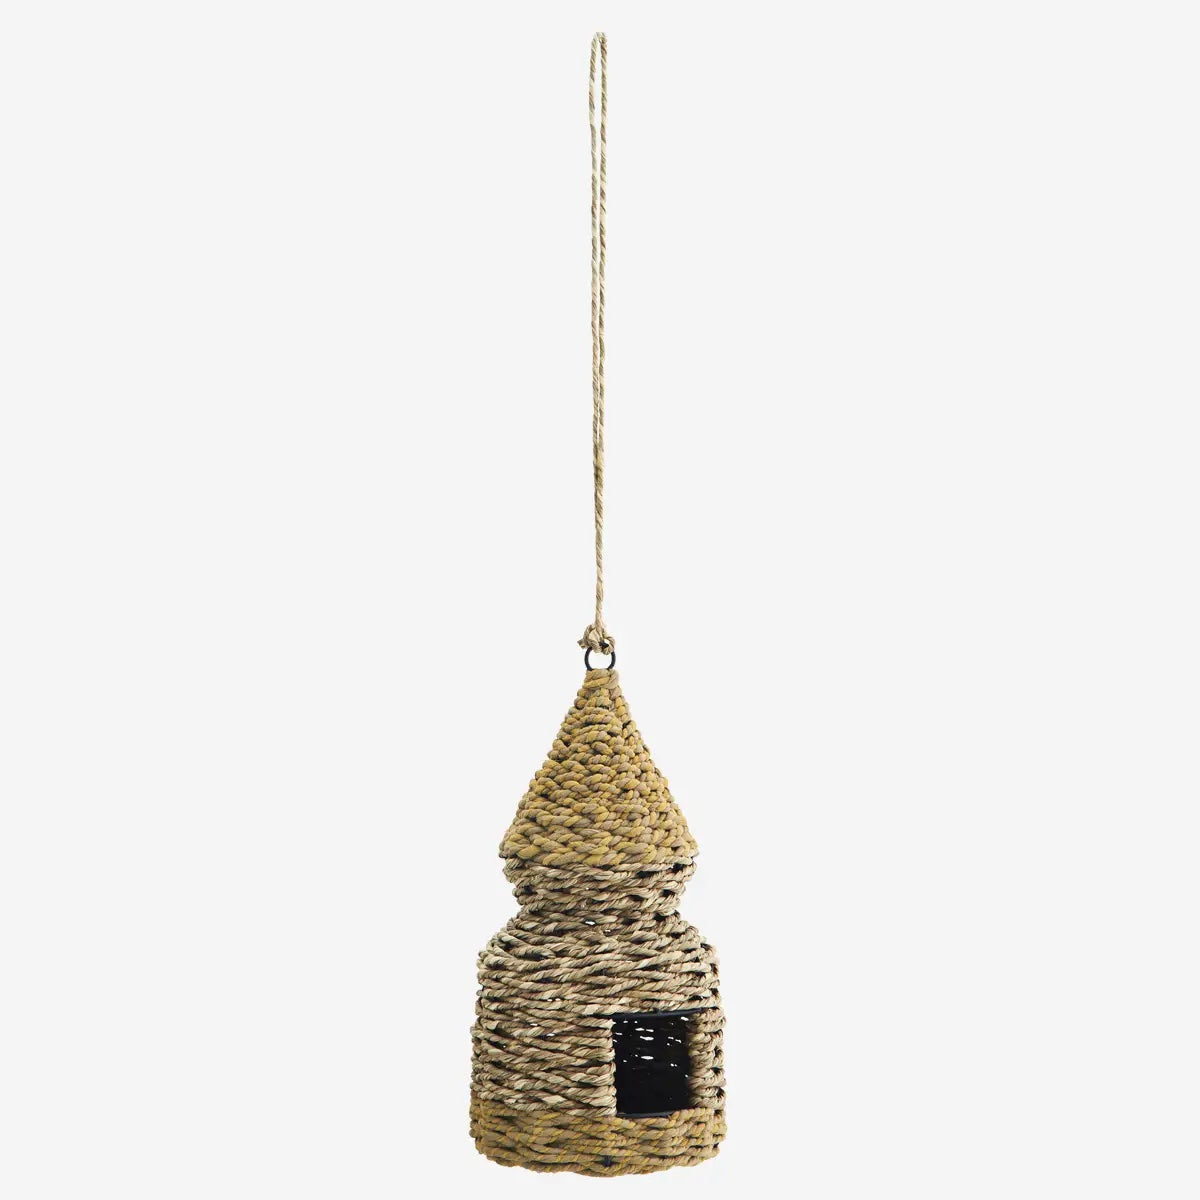 Hanging bird house (14x28 cm) - LEEF mode en accessoires